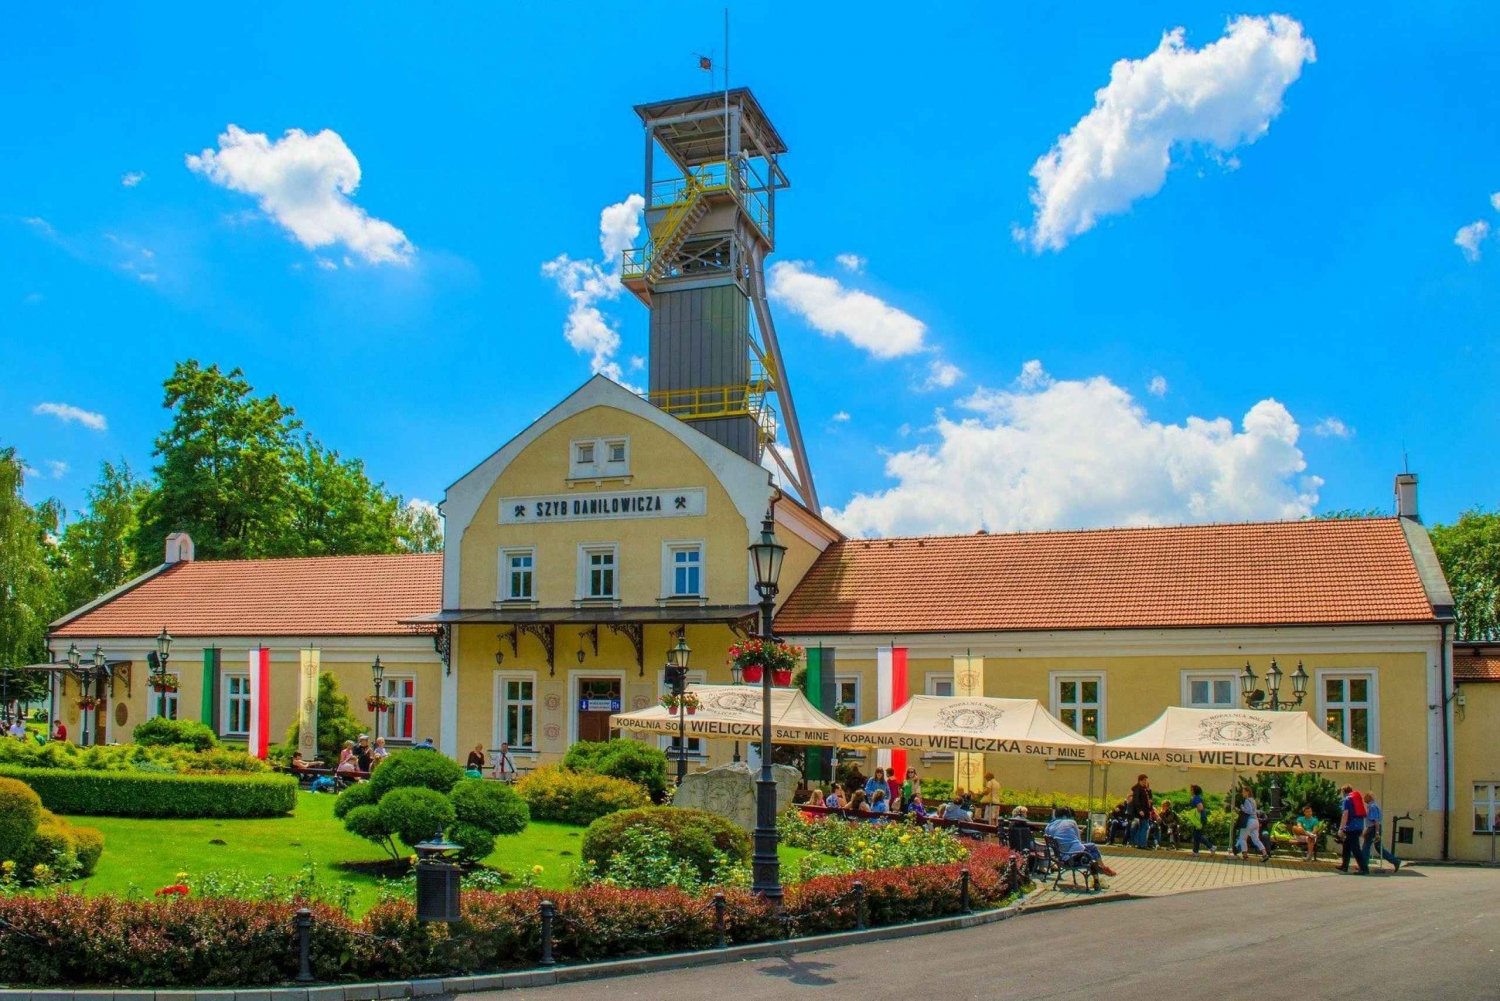 Mina de Sal de Wieliczka: Ticket de entrada sin colas y visita guiada